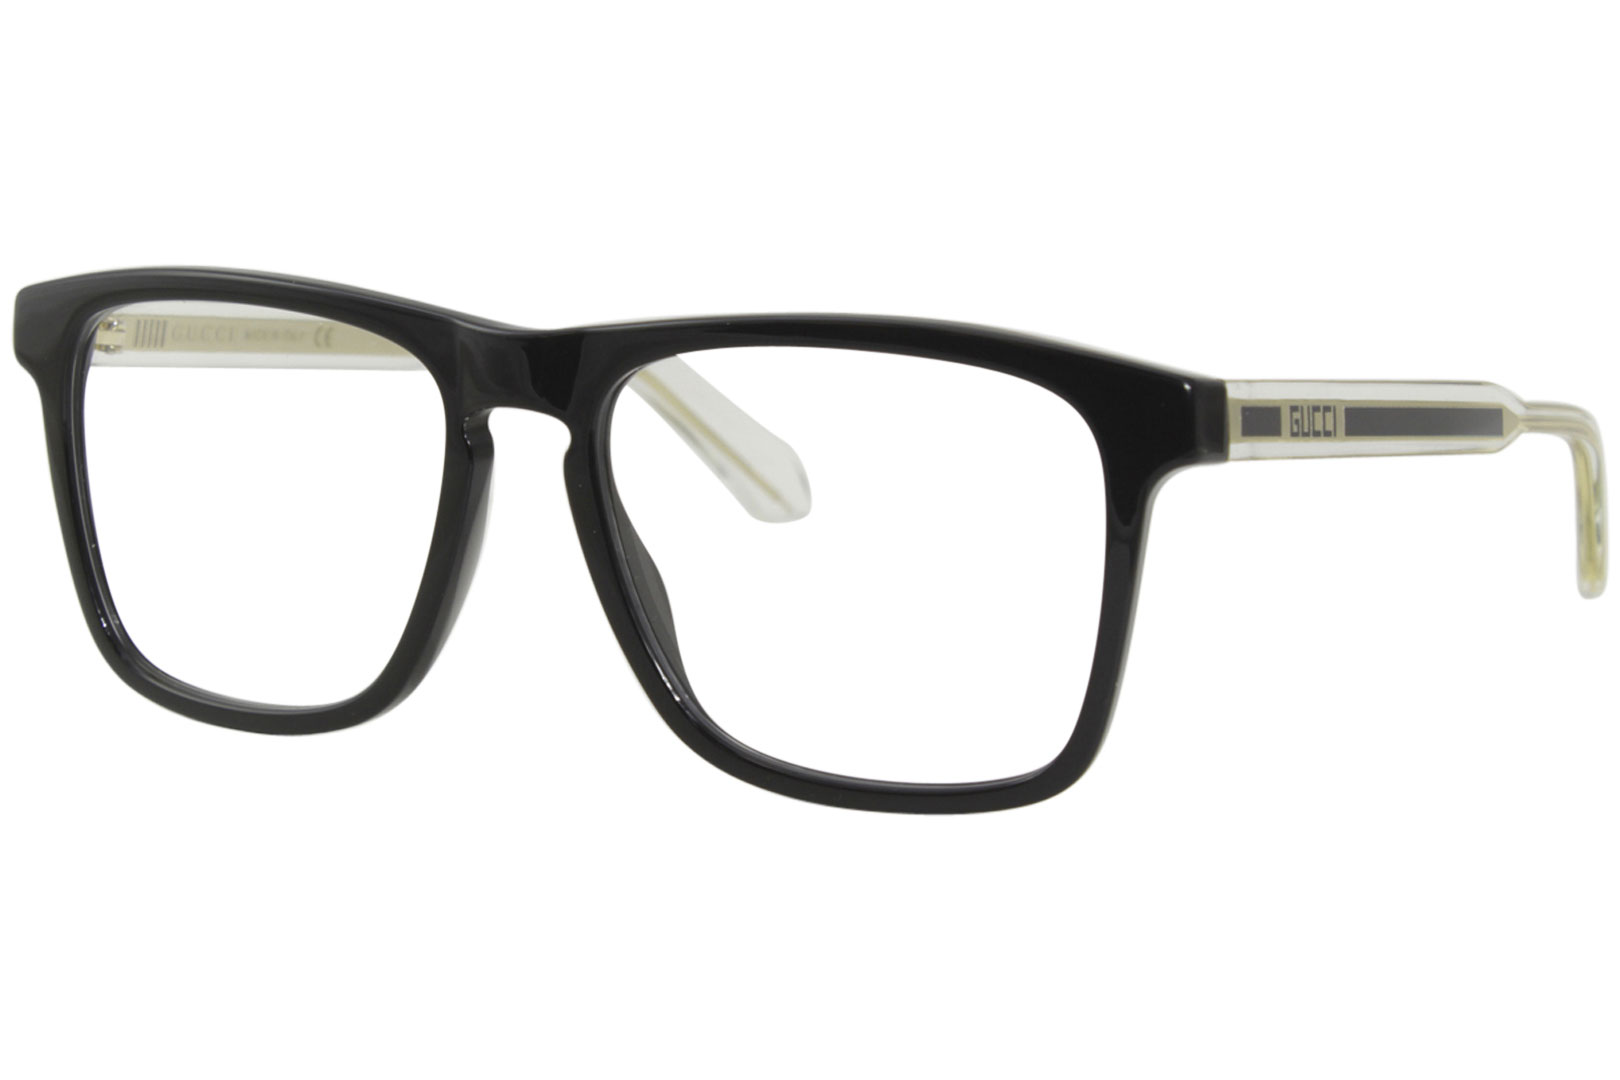 Gucci GG0561O 001 Eyeglasses Men's Black/Crystal Full Rim Optical Frame ...